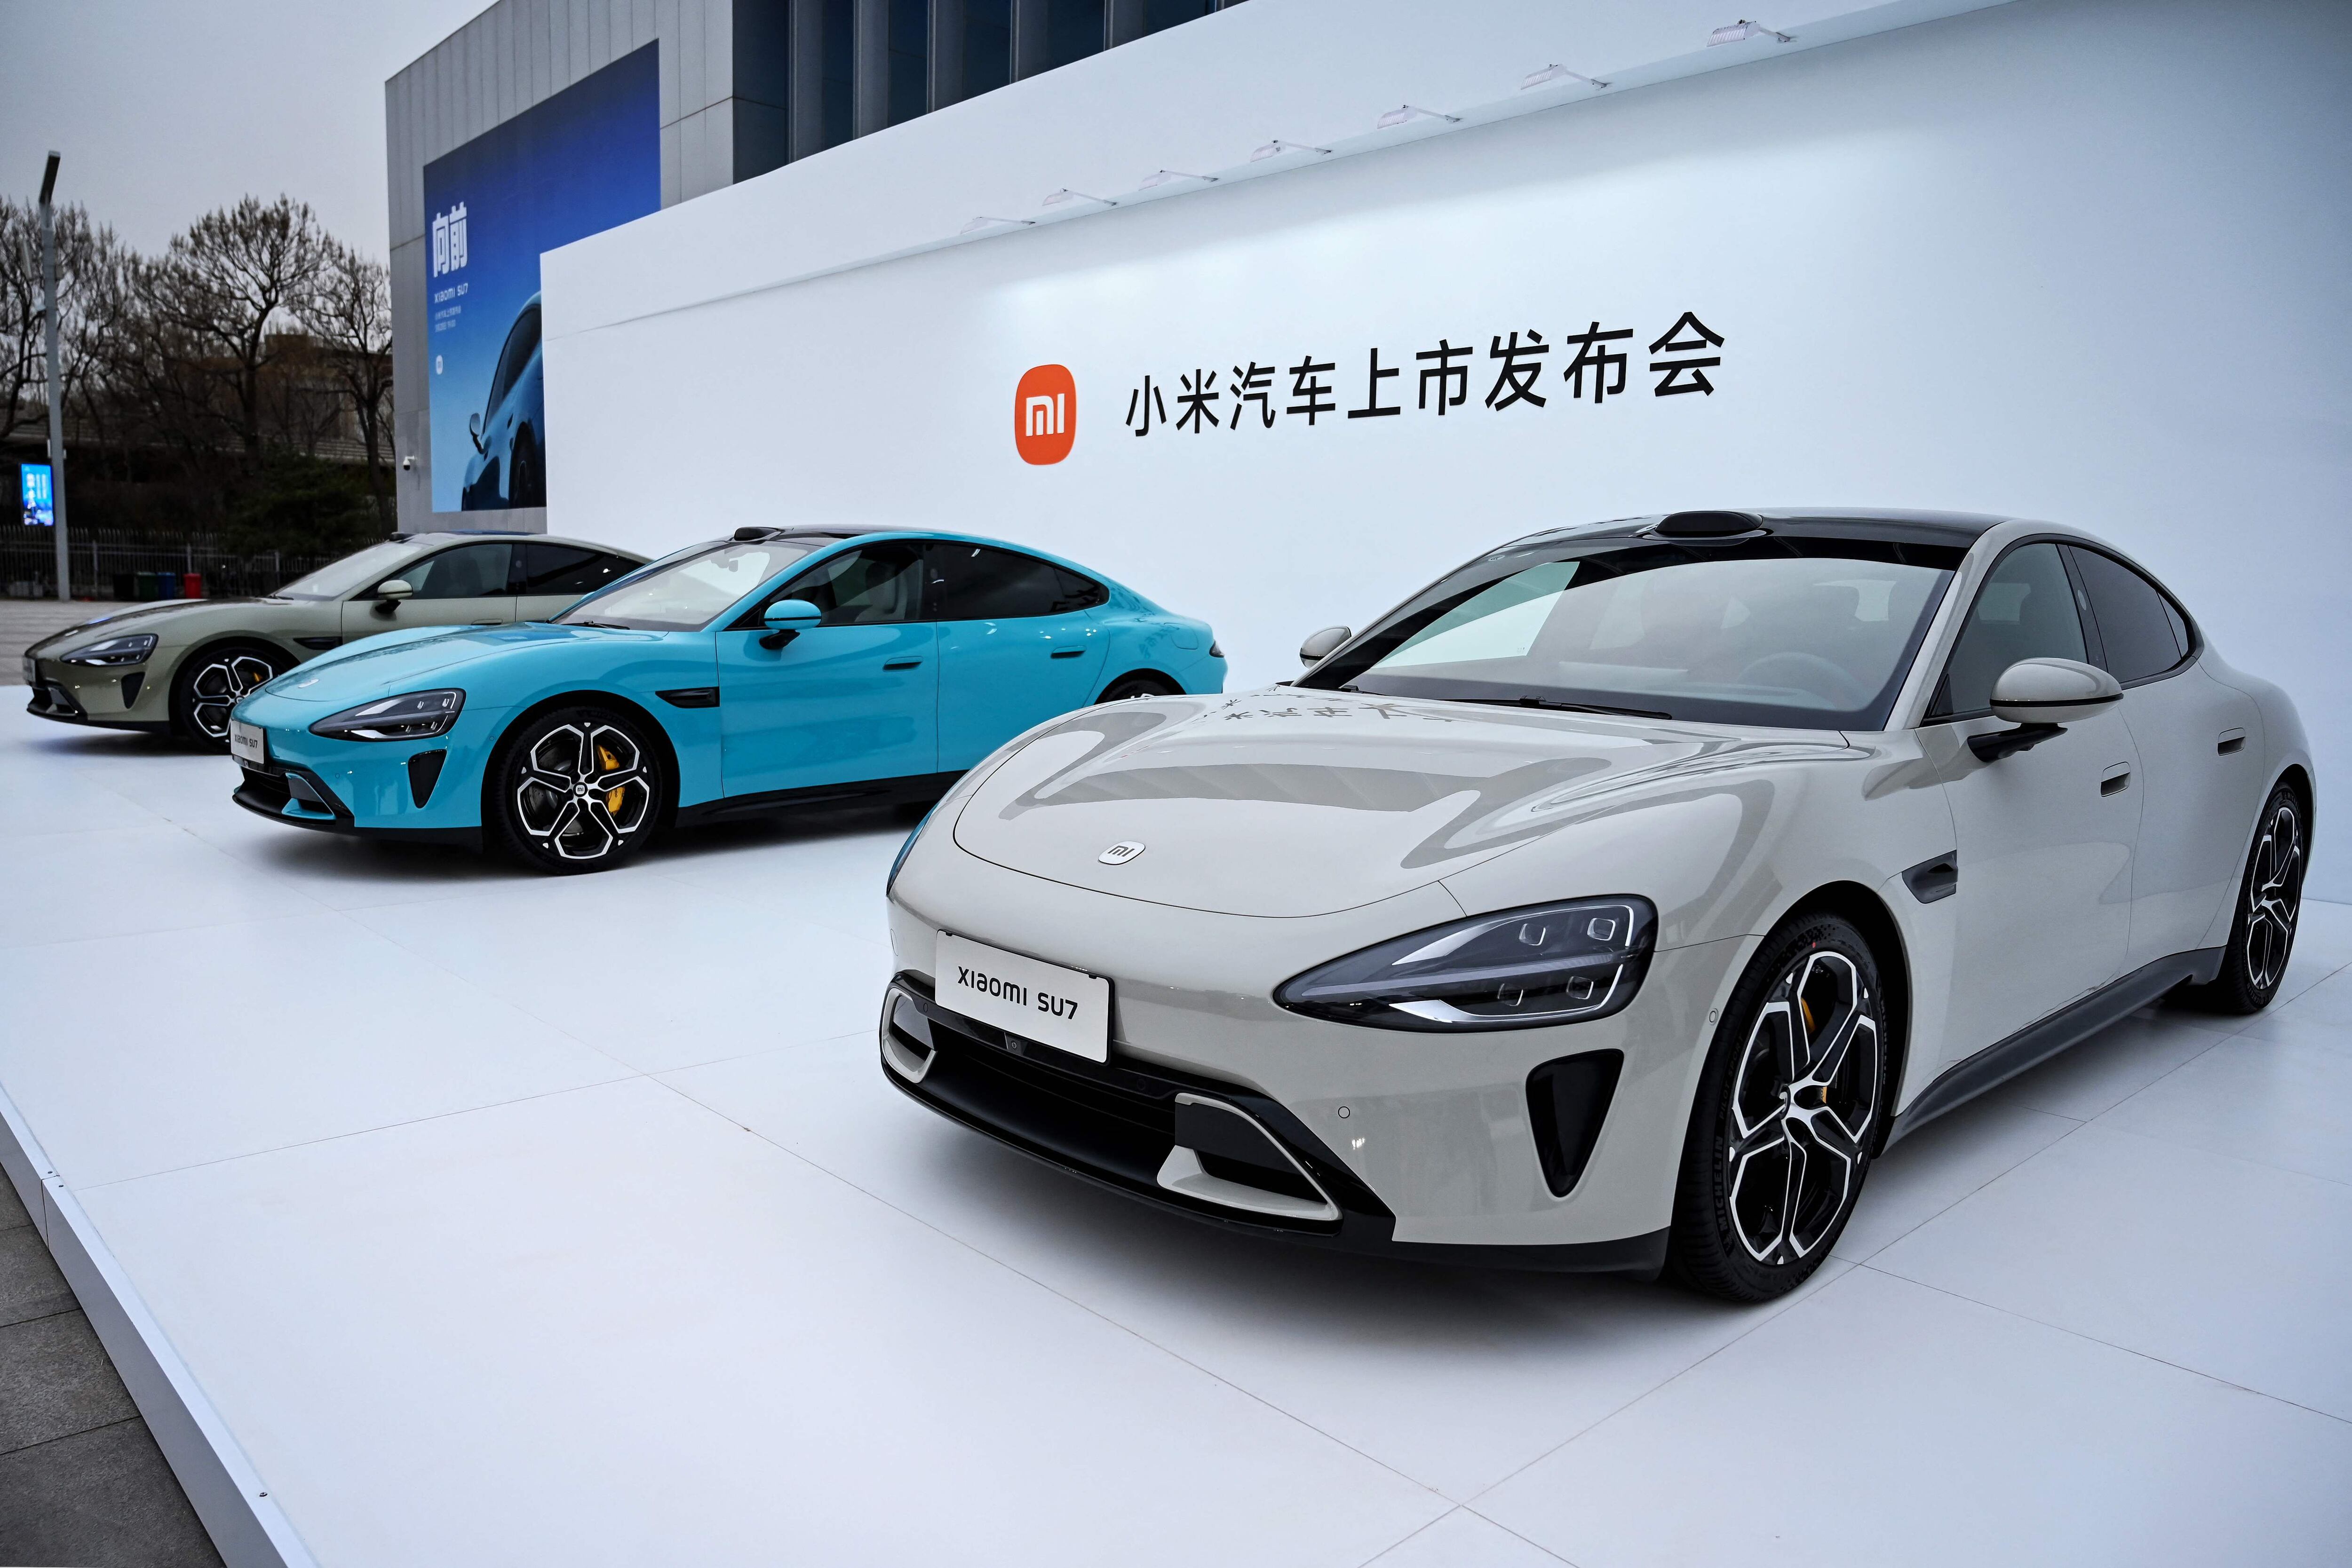 El auto eléctrico de Xiaomi, el SU7 EV aspira a competir con gigantes chinos del sector como BYD, pero también con los modelos Tesla de Elon Musk. (Foto: Micheal Zhang / AFP)